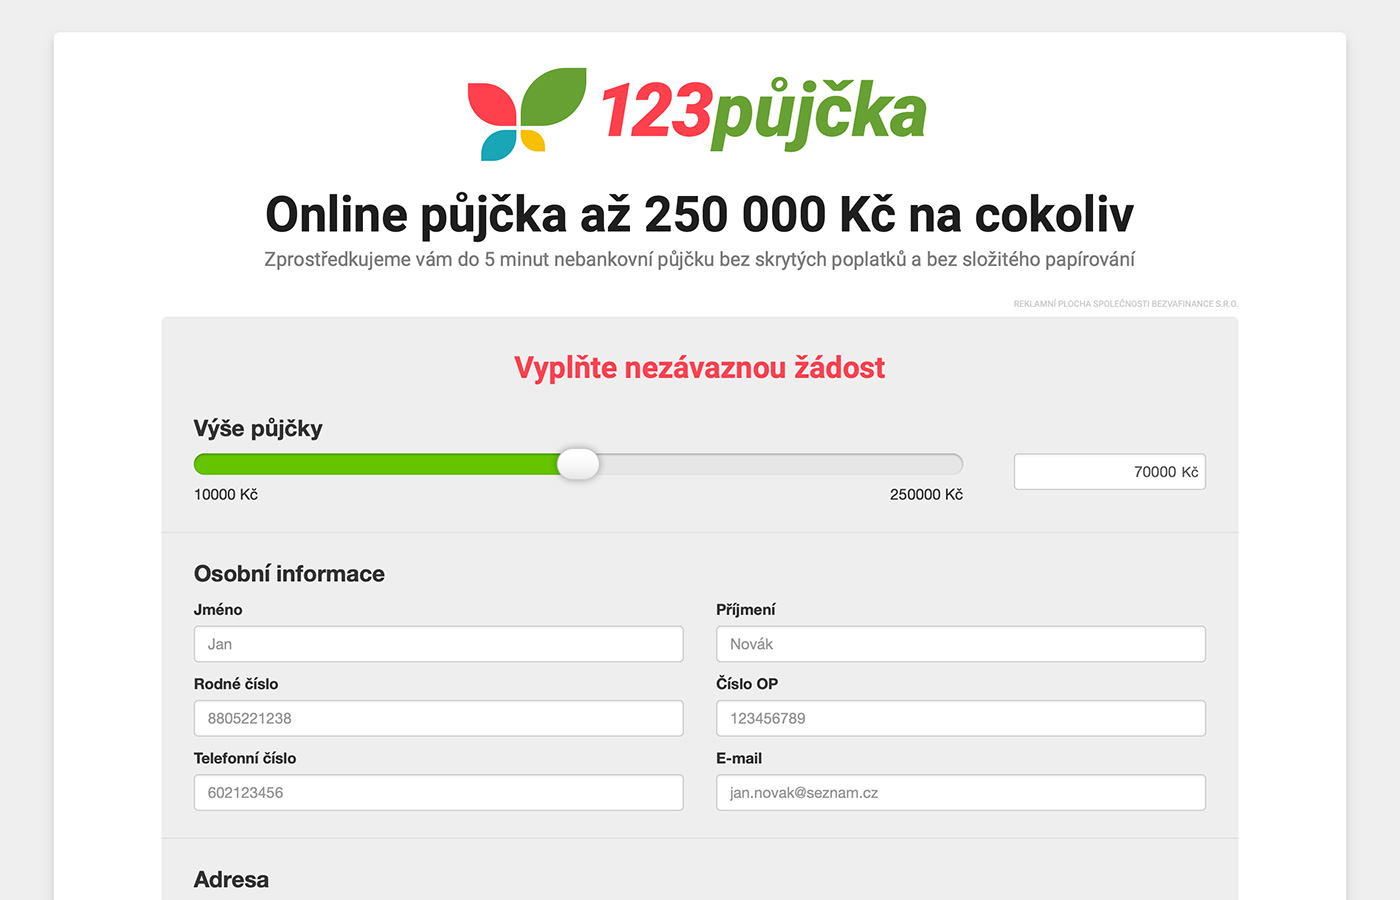 Webové stránky https://www.123pujcka.cz